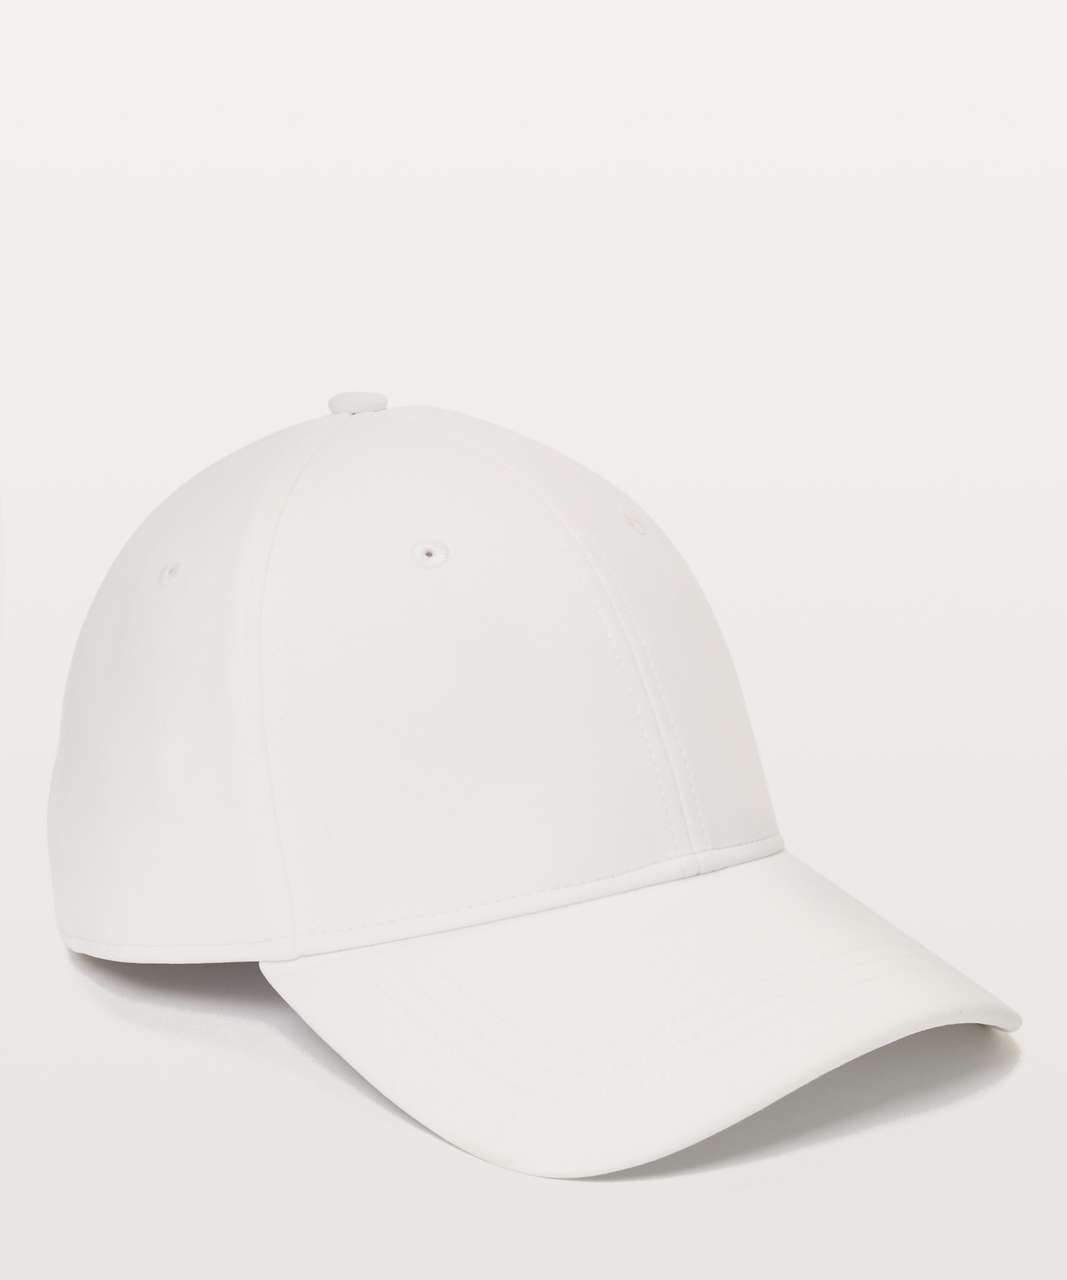 Lululemon Baller Hat - White (Second Release)